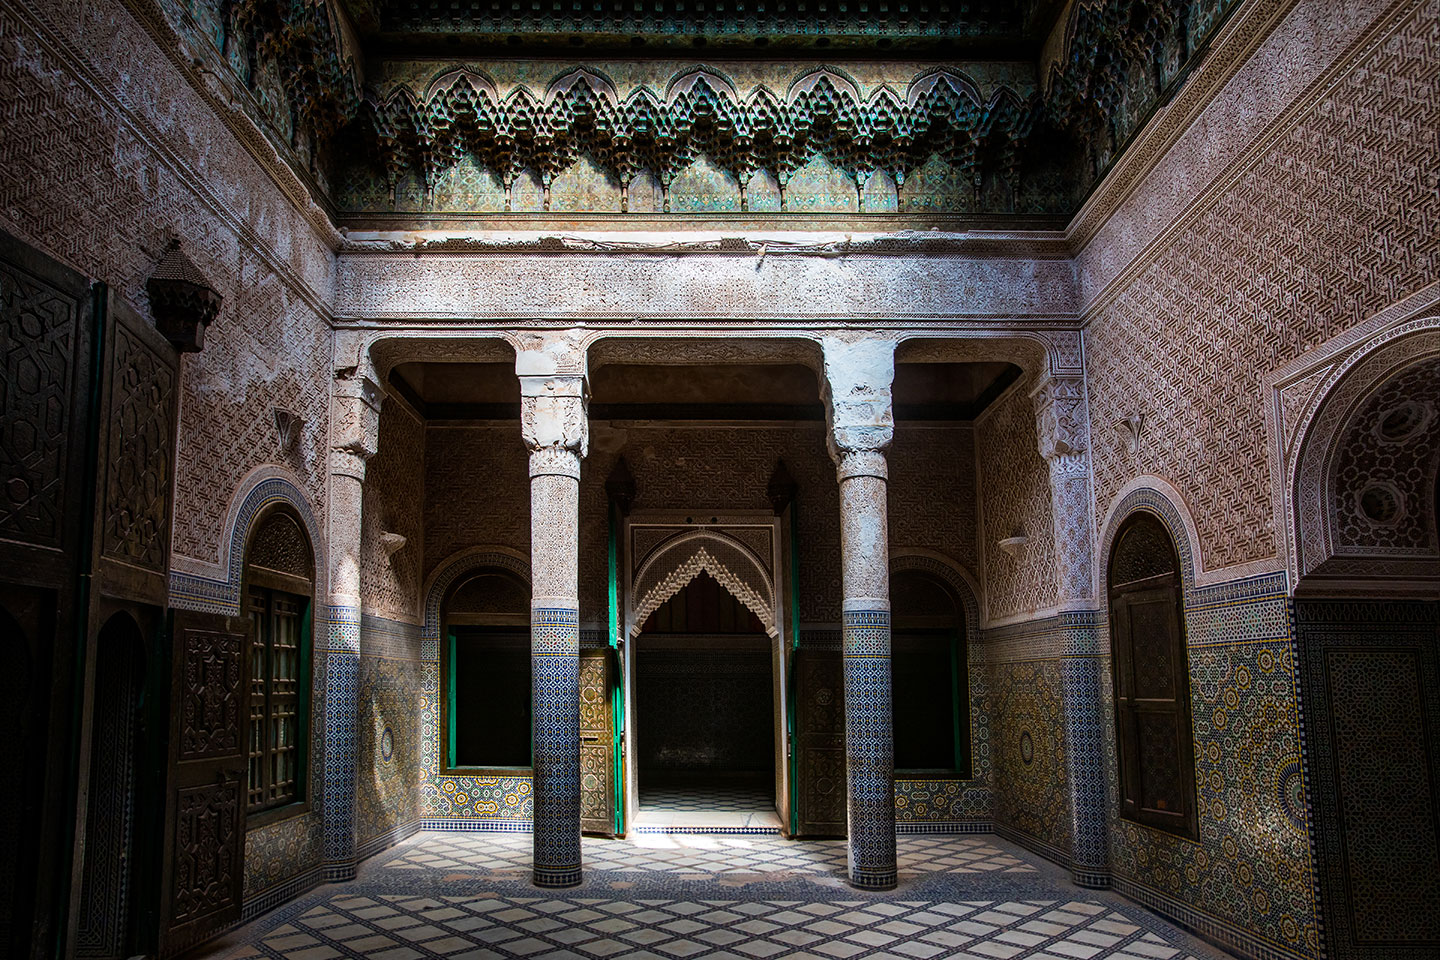 Riyad courtyard in Morocco